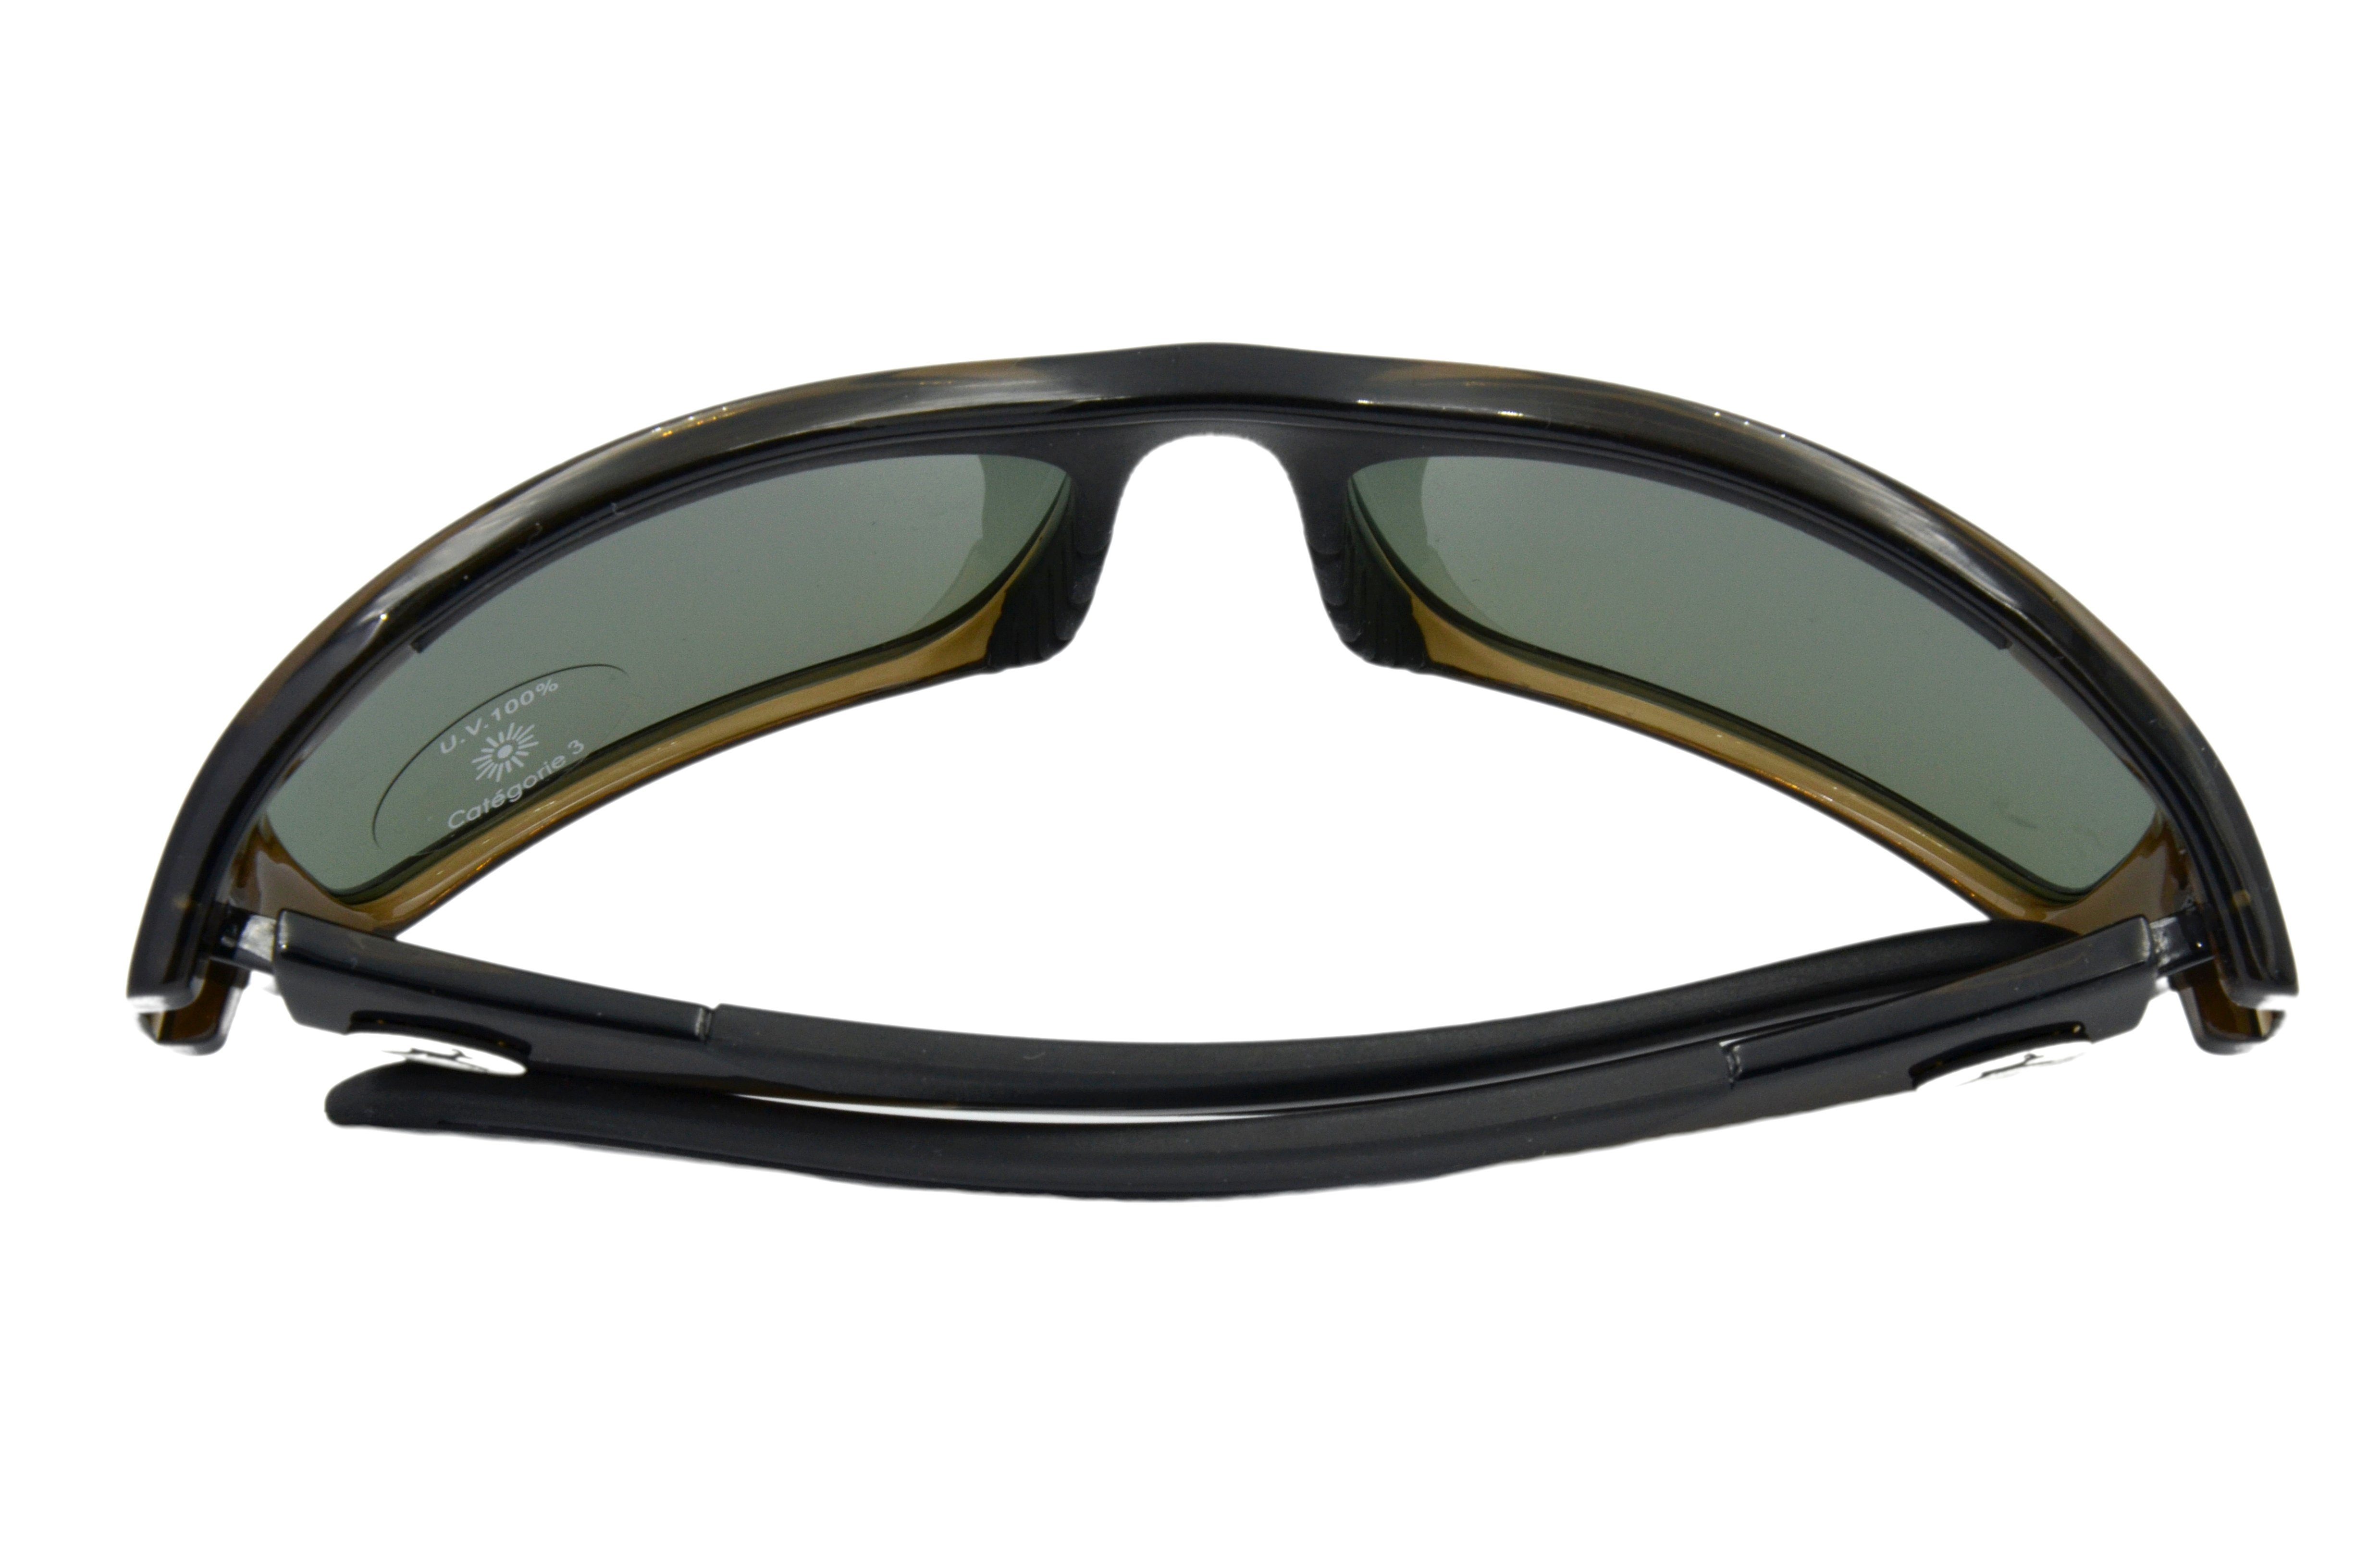 blau, grün-türkis, Sportbrille Gamswild Fahrradbrille schwarz, braun grau, Skibrille WS6034 Sportbrille Sonnenbrille Gläser, polarisierte Damen Herren,